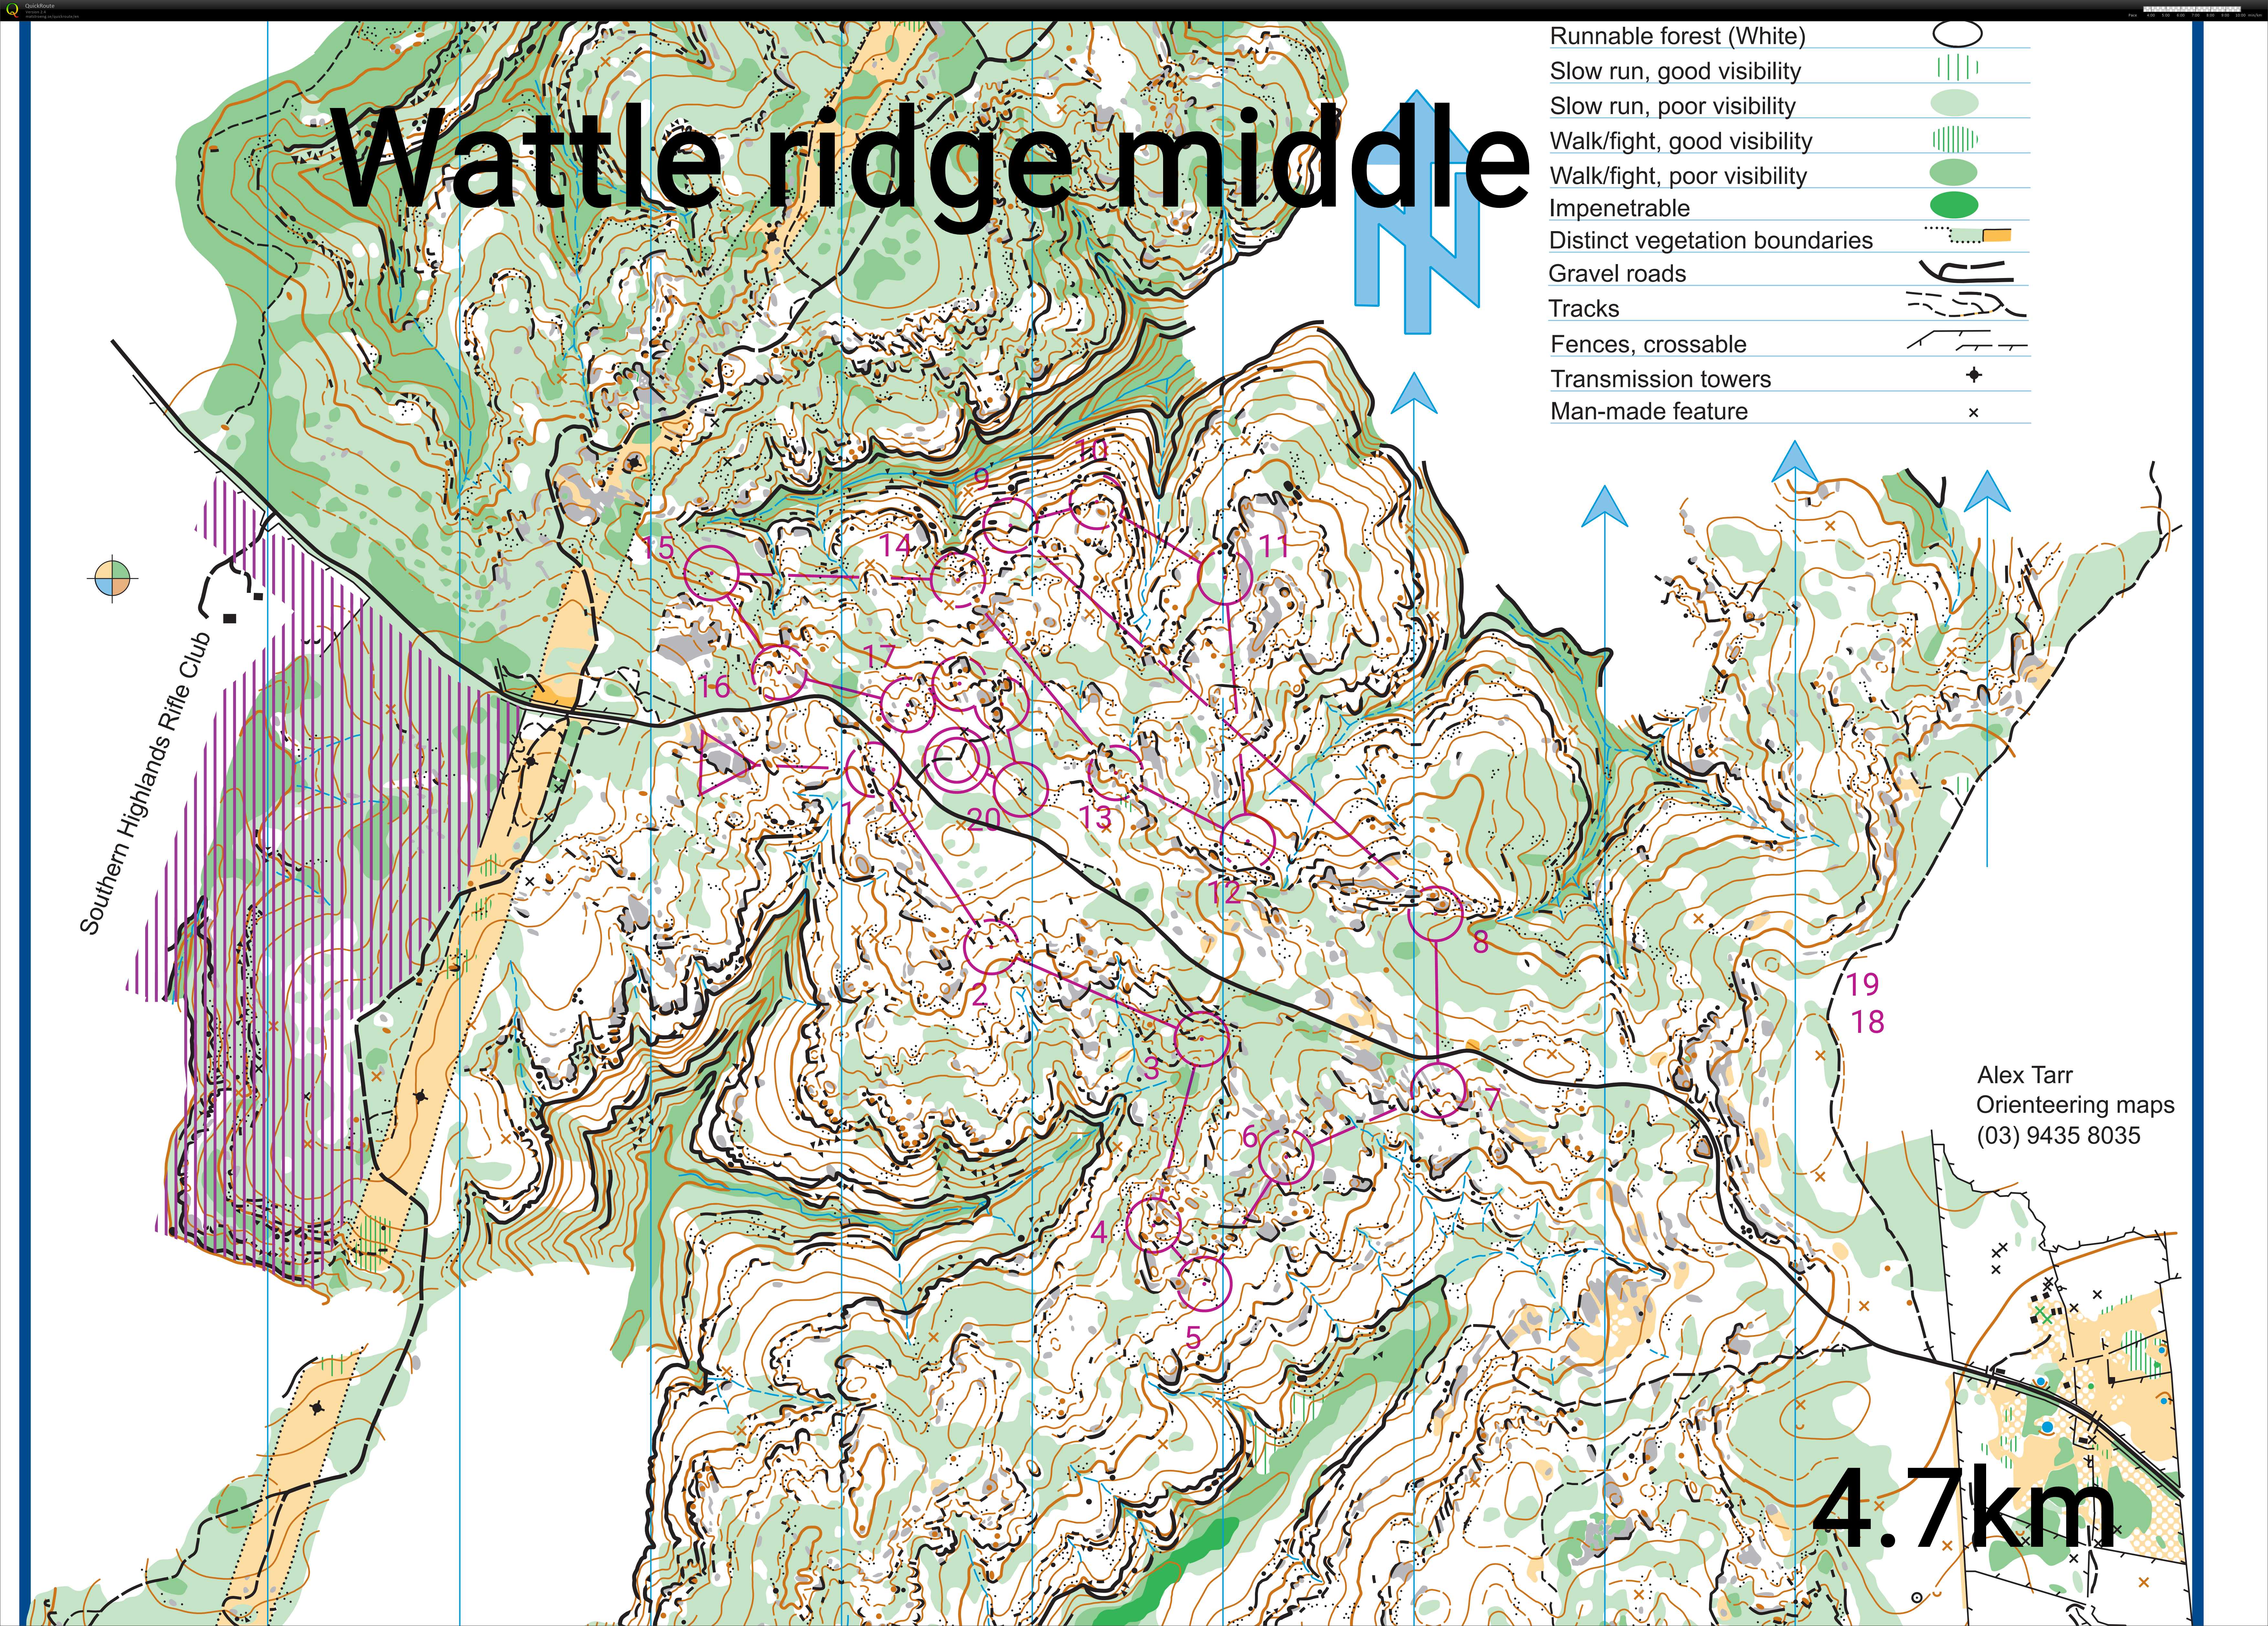 Wattle ridge middle sim (2020-07-06)